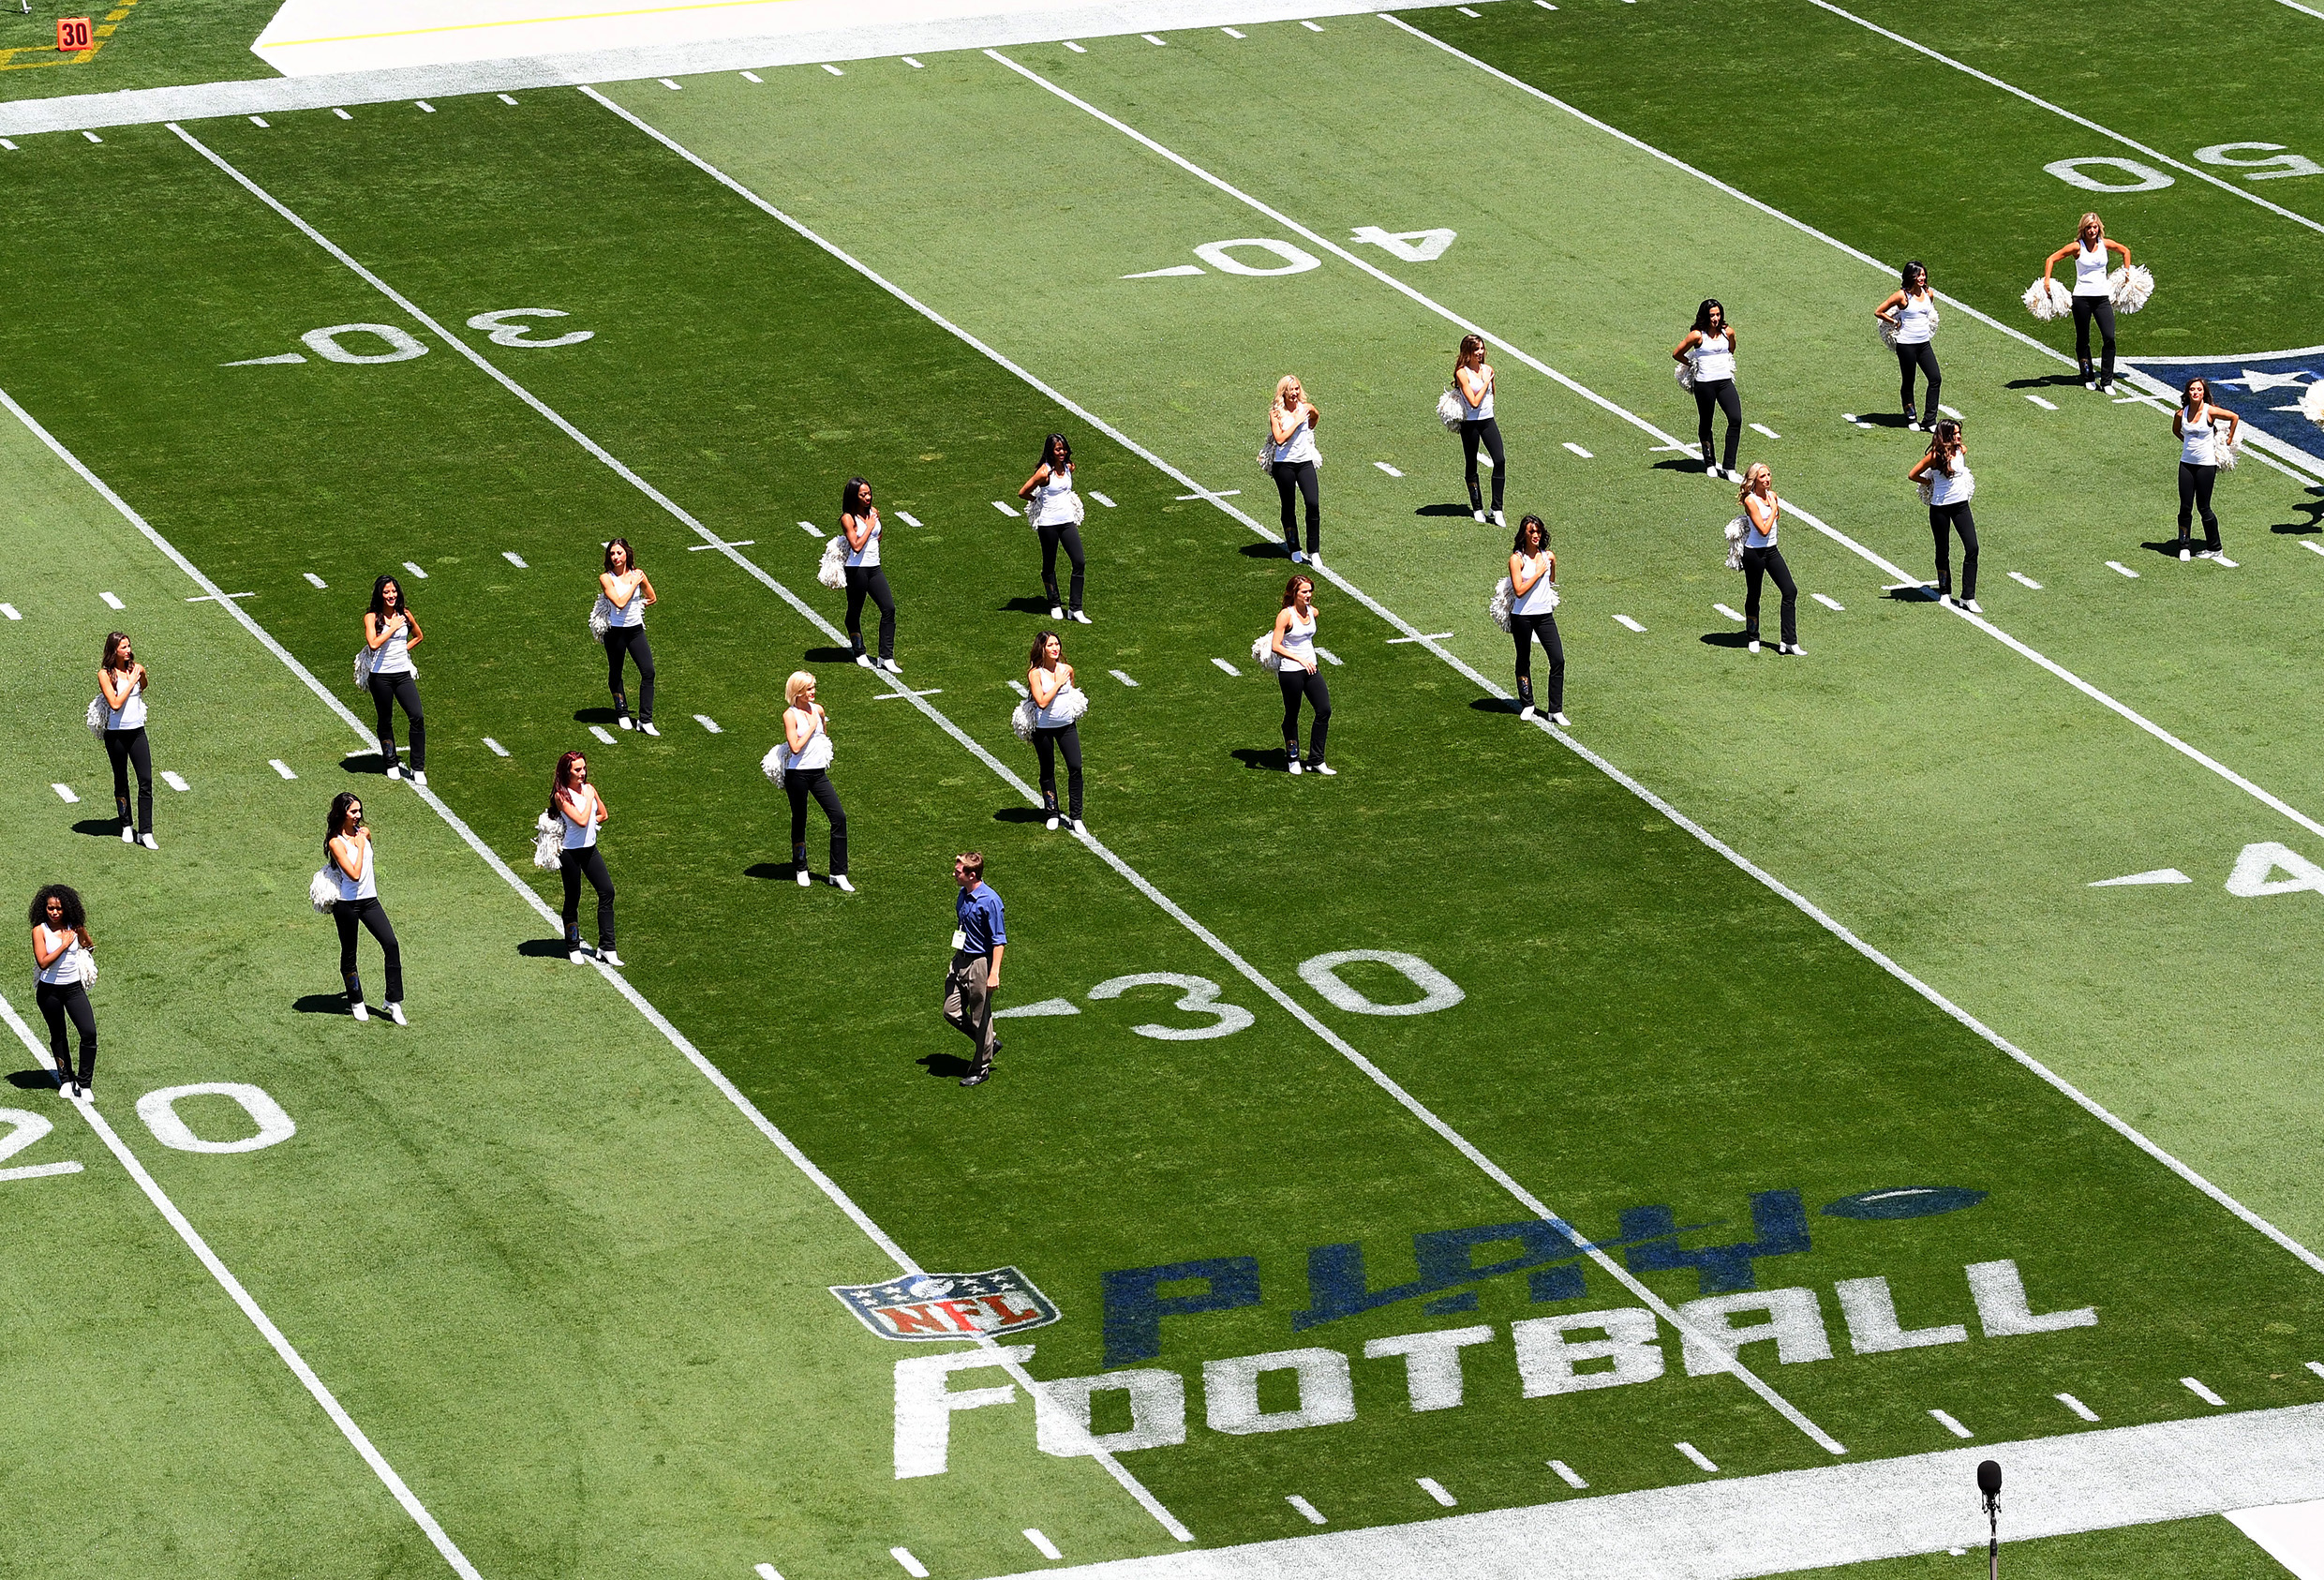 Los Angeles Rams cheerleaders practice